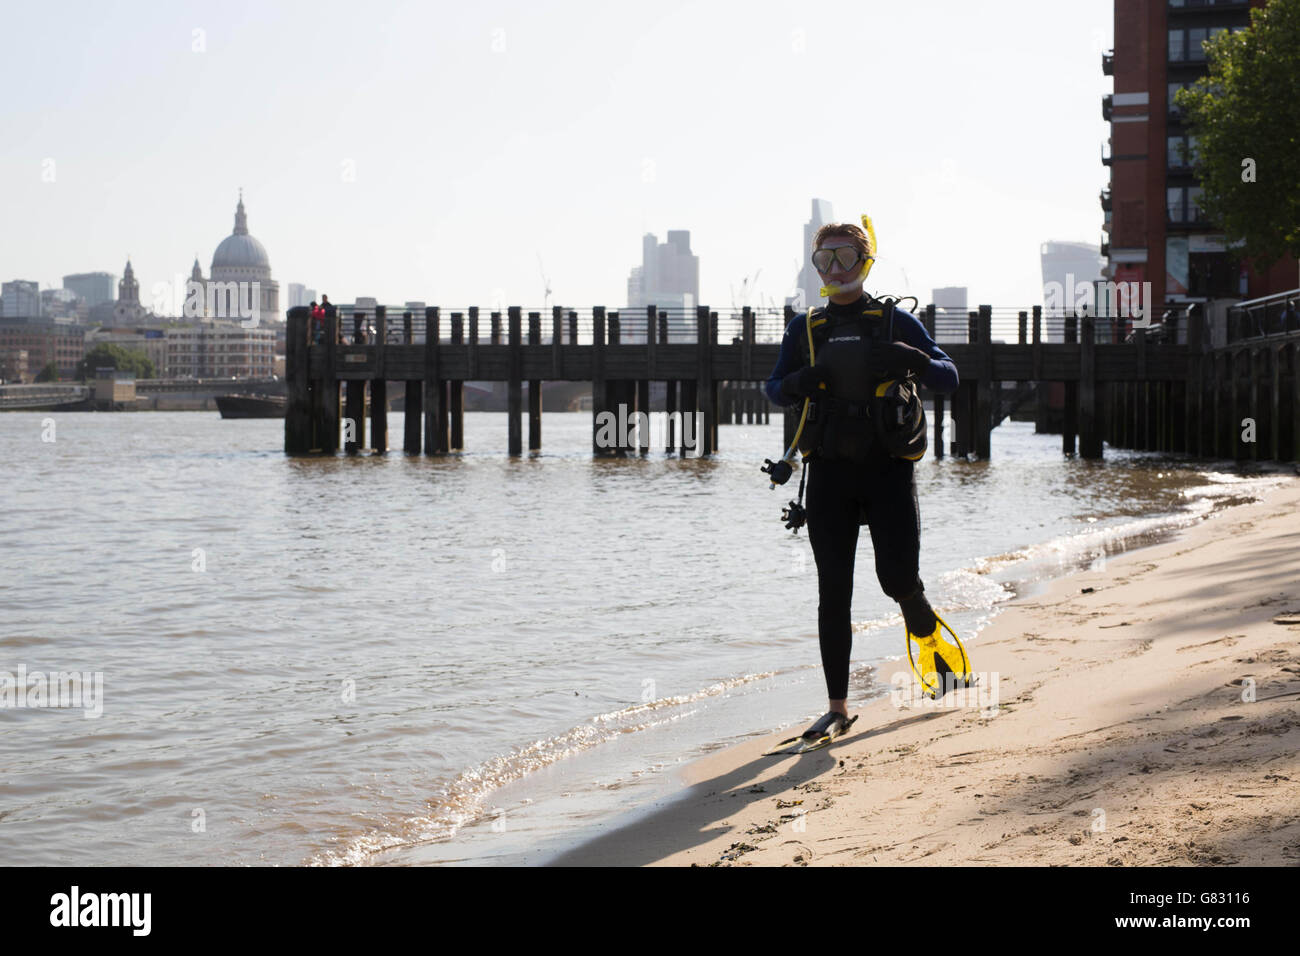 EDITORIAL Utilisez uniquement un acteur vêtu comme un plongeur en scaphandre autonome marche à côté de la Tamise à Londres pour le Télétexte Holidays' campagne d'été, pour marquer le début de la période des vacances d'été. Banque D'Images